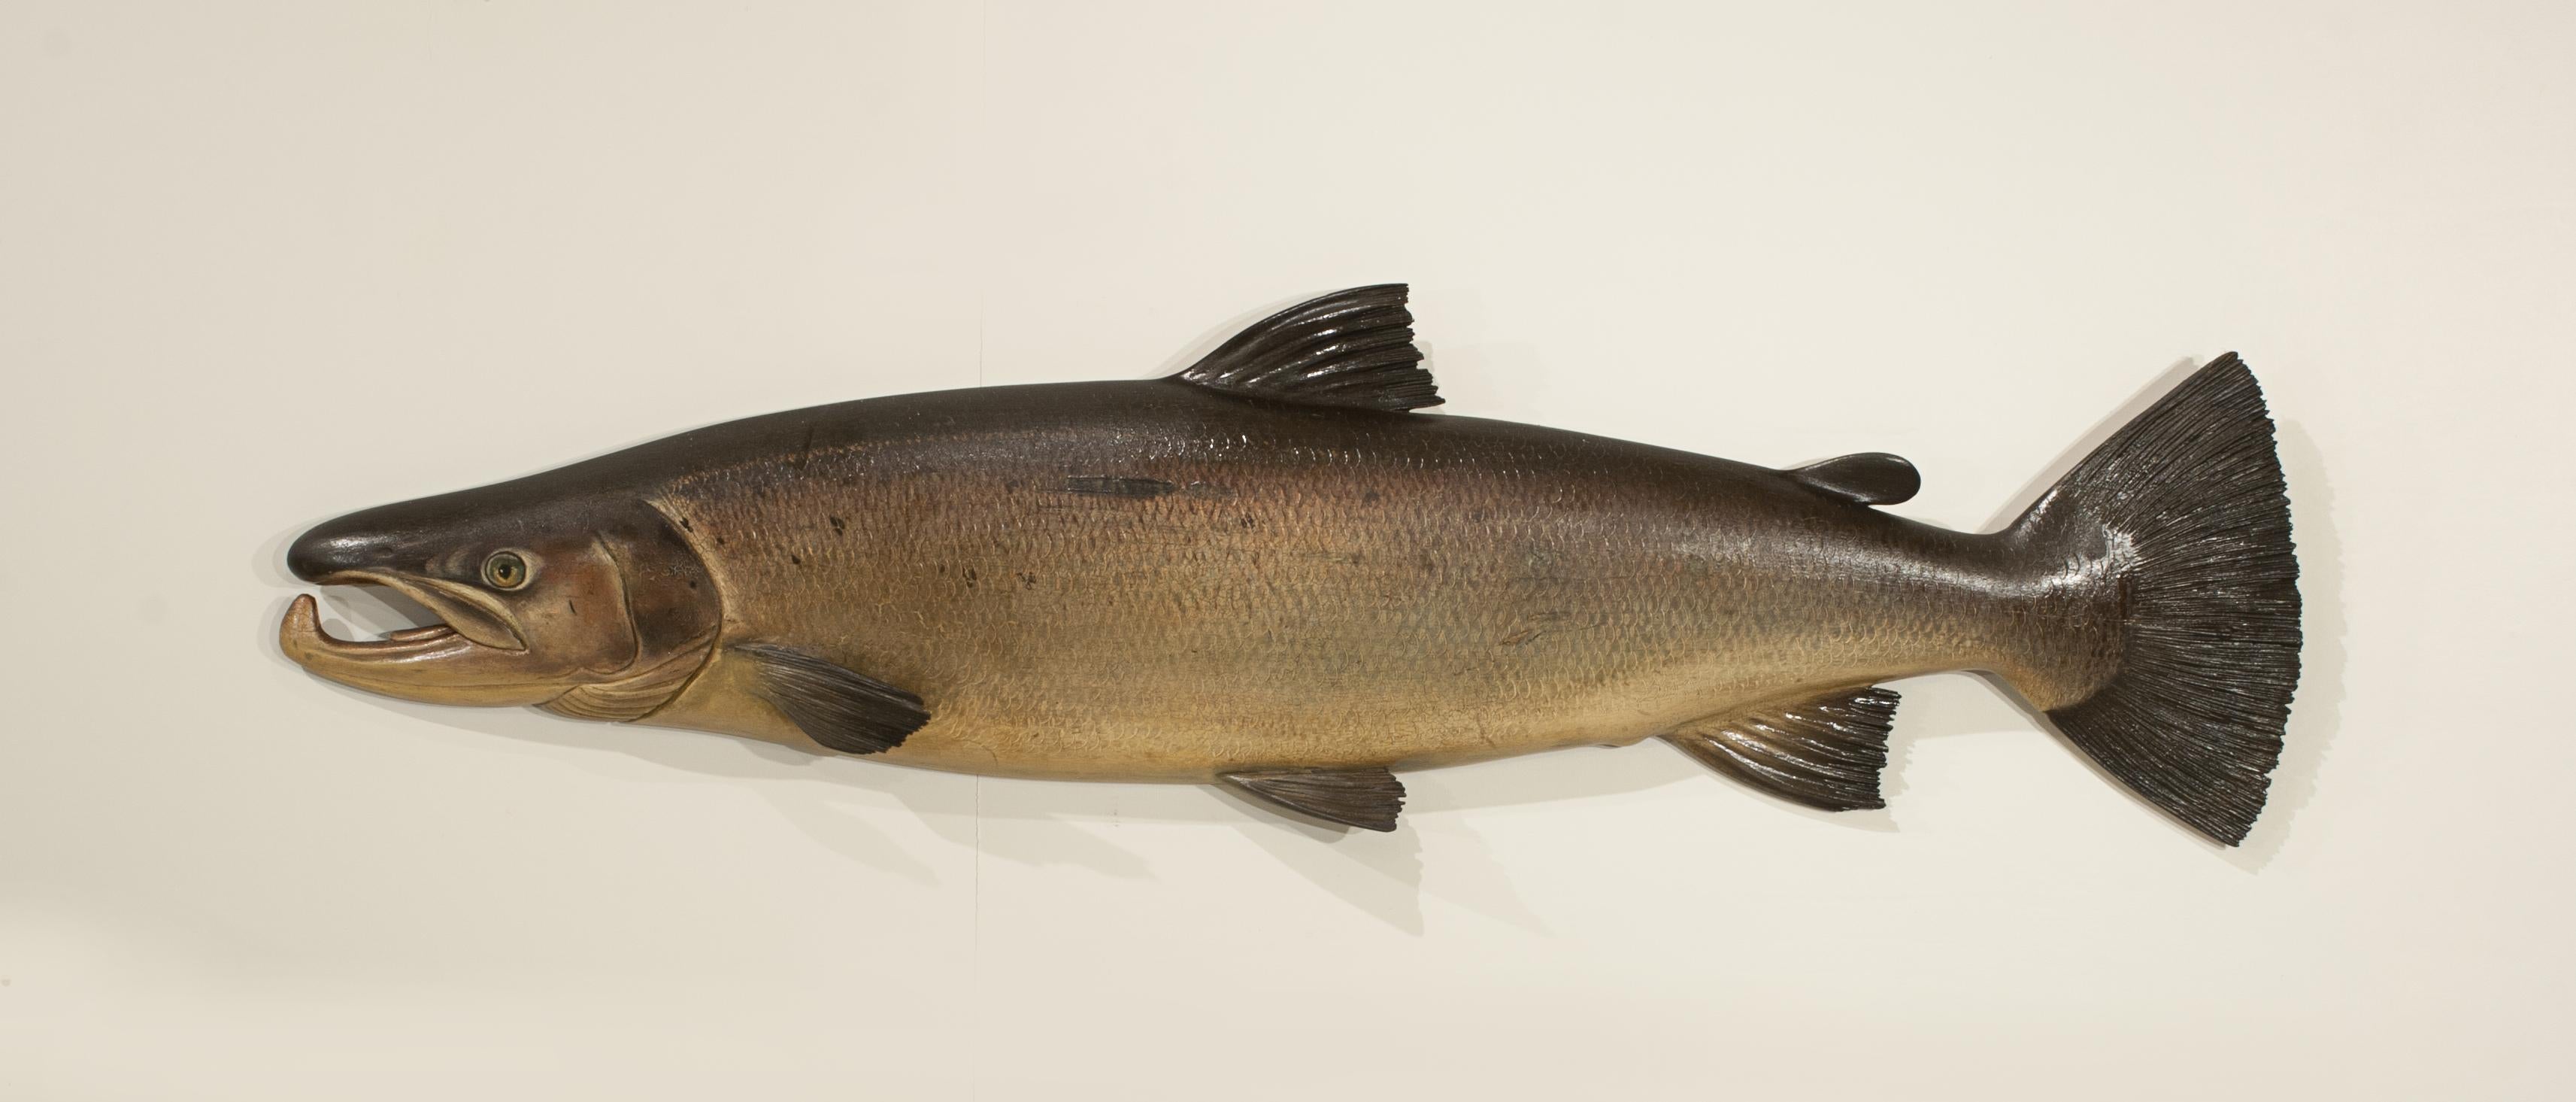 Geschnitzter Wye Salmon Trophy Fish.
Eine ausgezeichnete Fochaber's Studio geschnitzt hölzernen Hahn Lachs. Der Halbblocklachs hat Reliefflossen und ist sehr schön ausgeführt und hochwertig bemalt. Dies ist höchstwahrscheinlich einer der